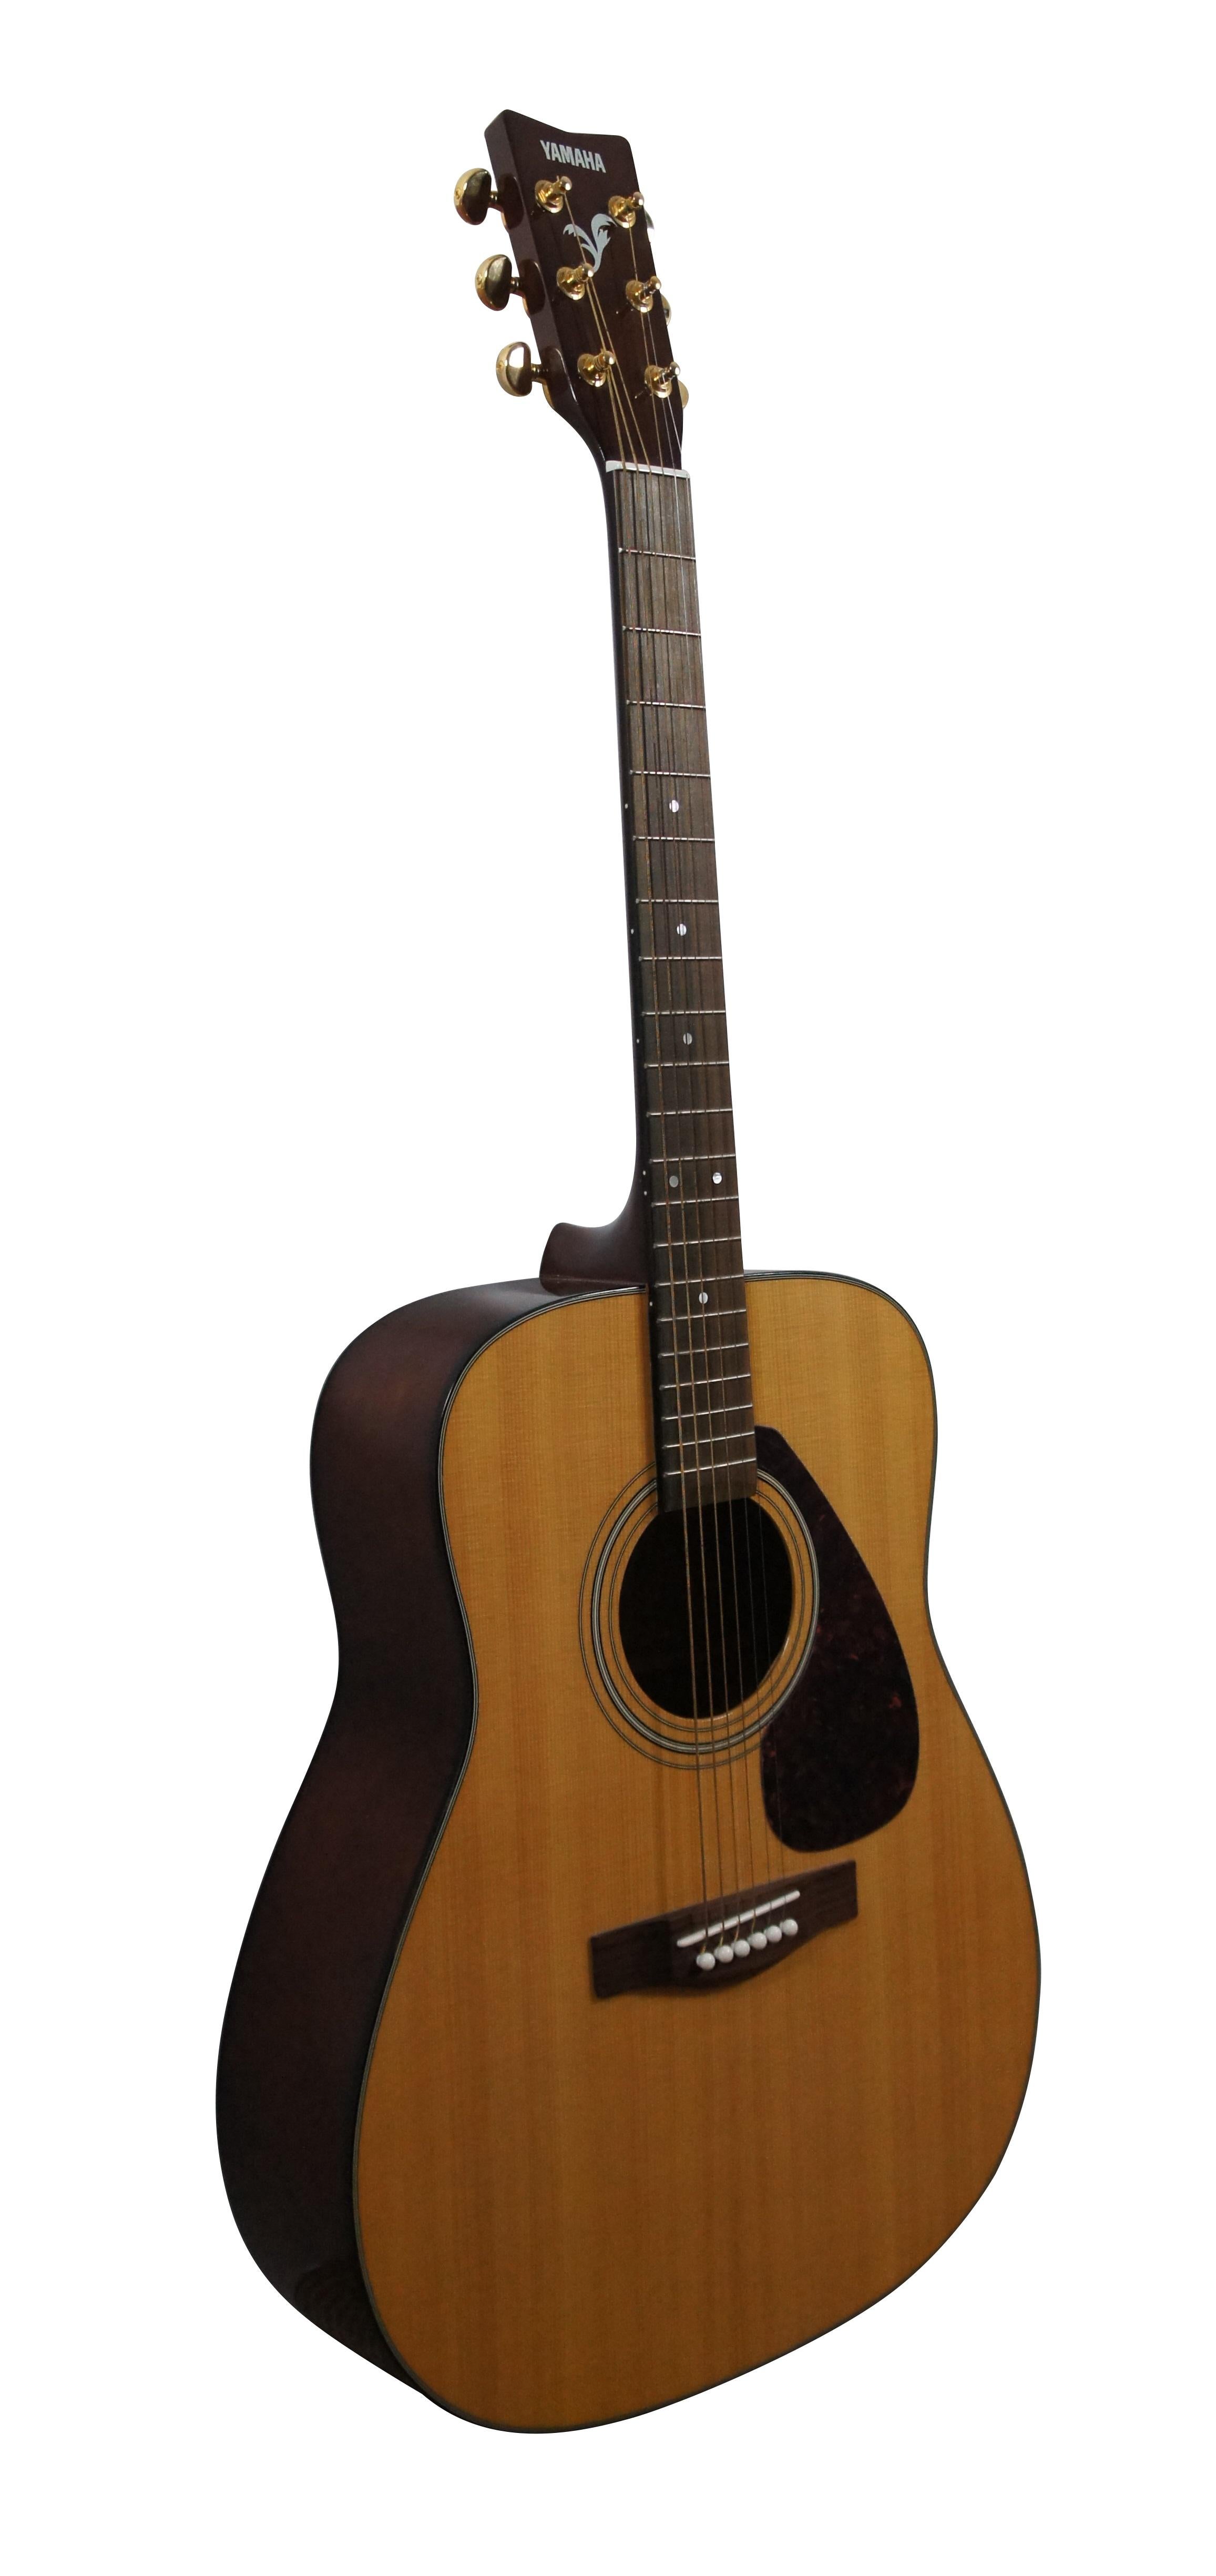 Guitare acoustique Yamaha F-335 - QLM284228. Comprend un étui souple noir, un paquet non ouvert de cordes de guitare acoustique Martin SP - Phosphor Bronze Medium, un accordeur Korg GA-30 pour guitare et basse (fonctionnant sur piles) avec un livret